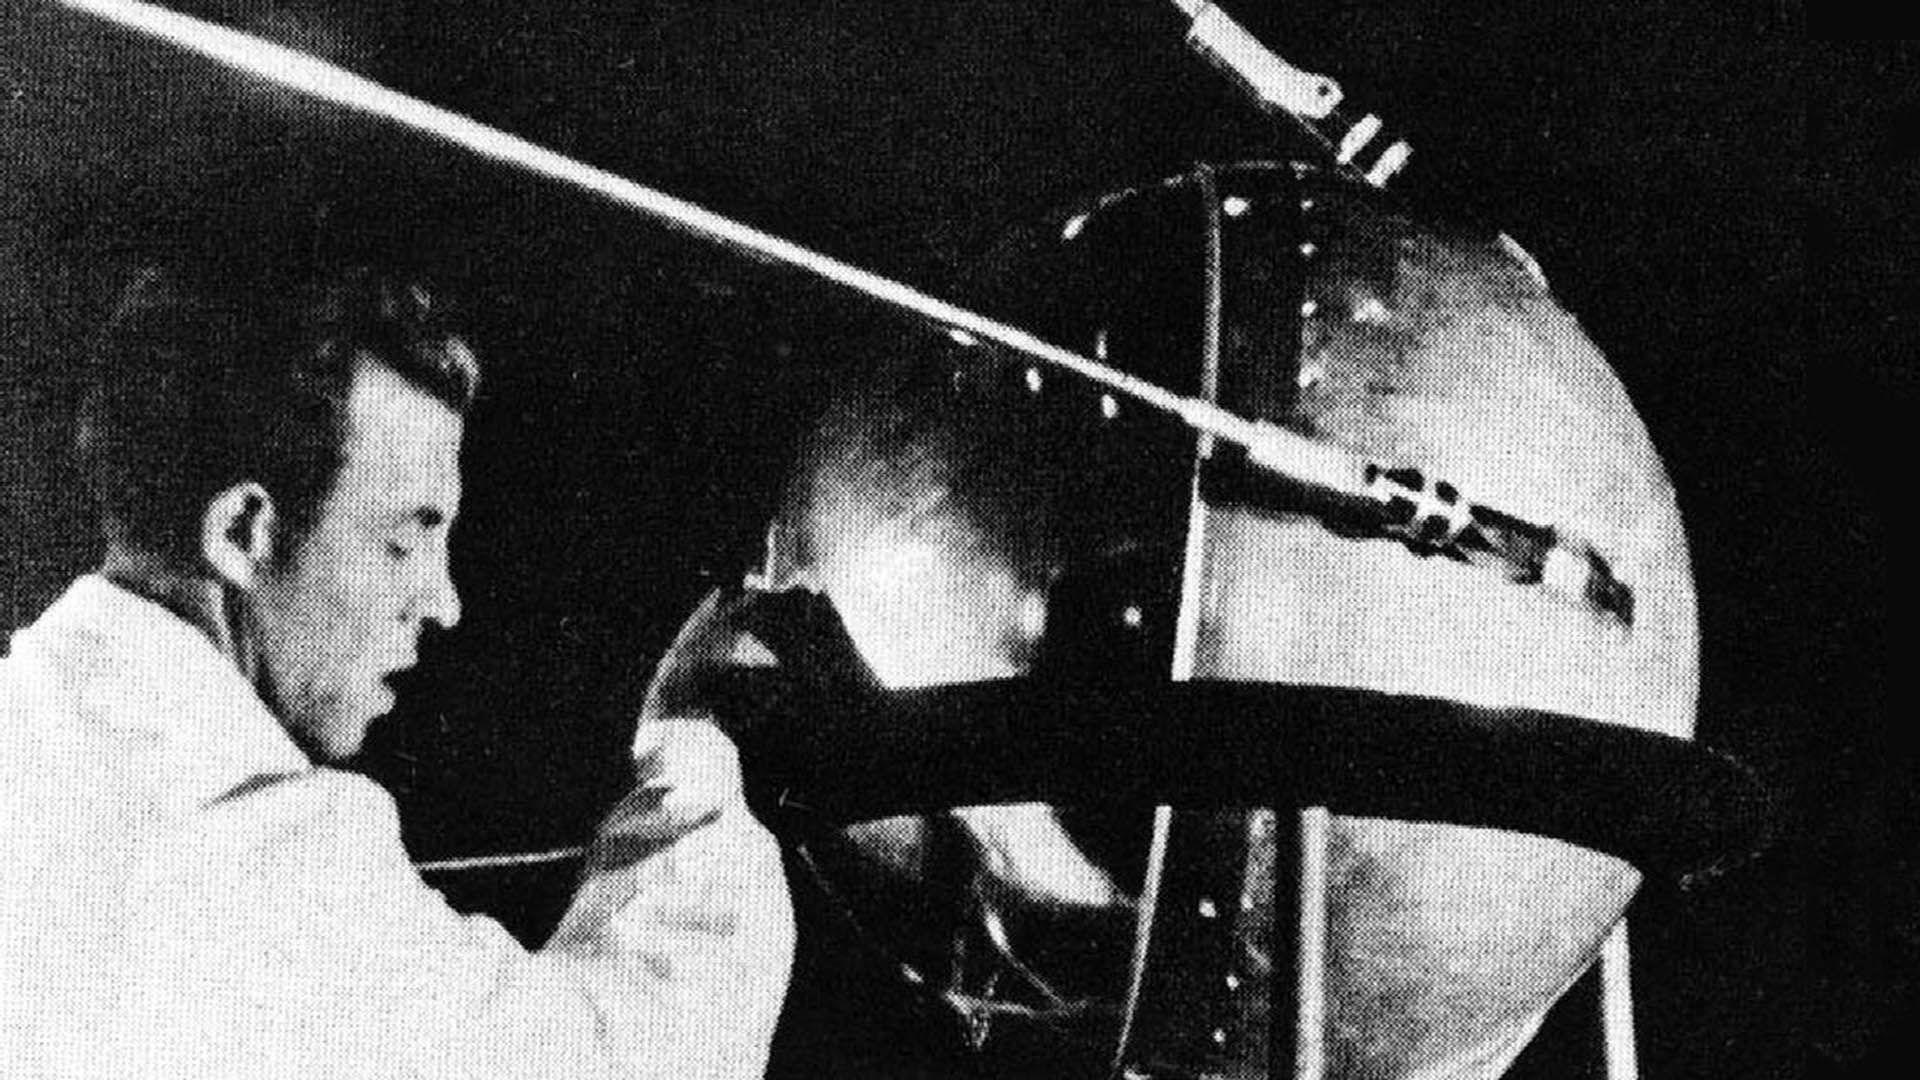 Imagen de un científico soviético trabajando en el satélite Sputnik 1 que fue lanzado en órbita en 1957.